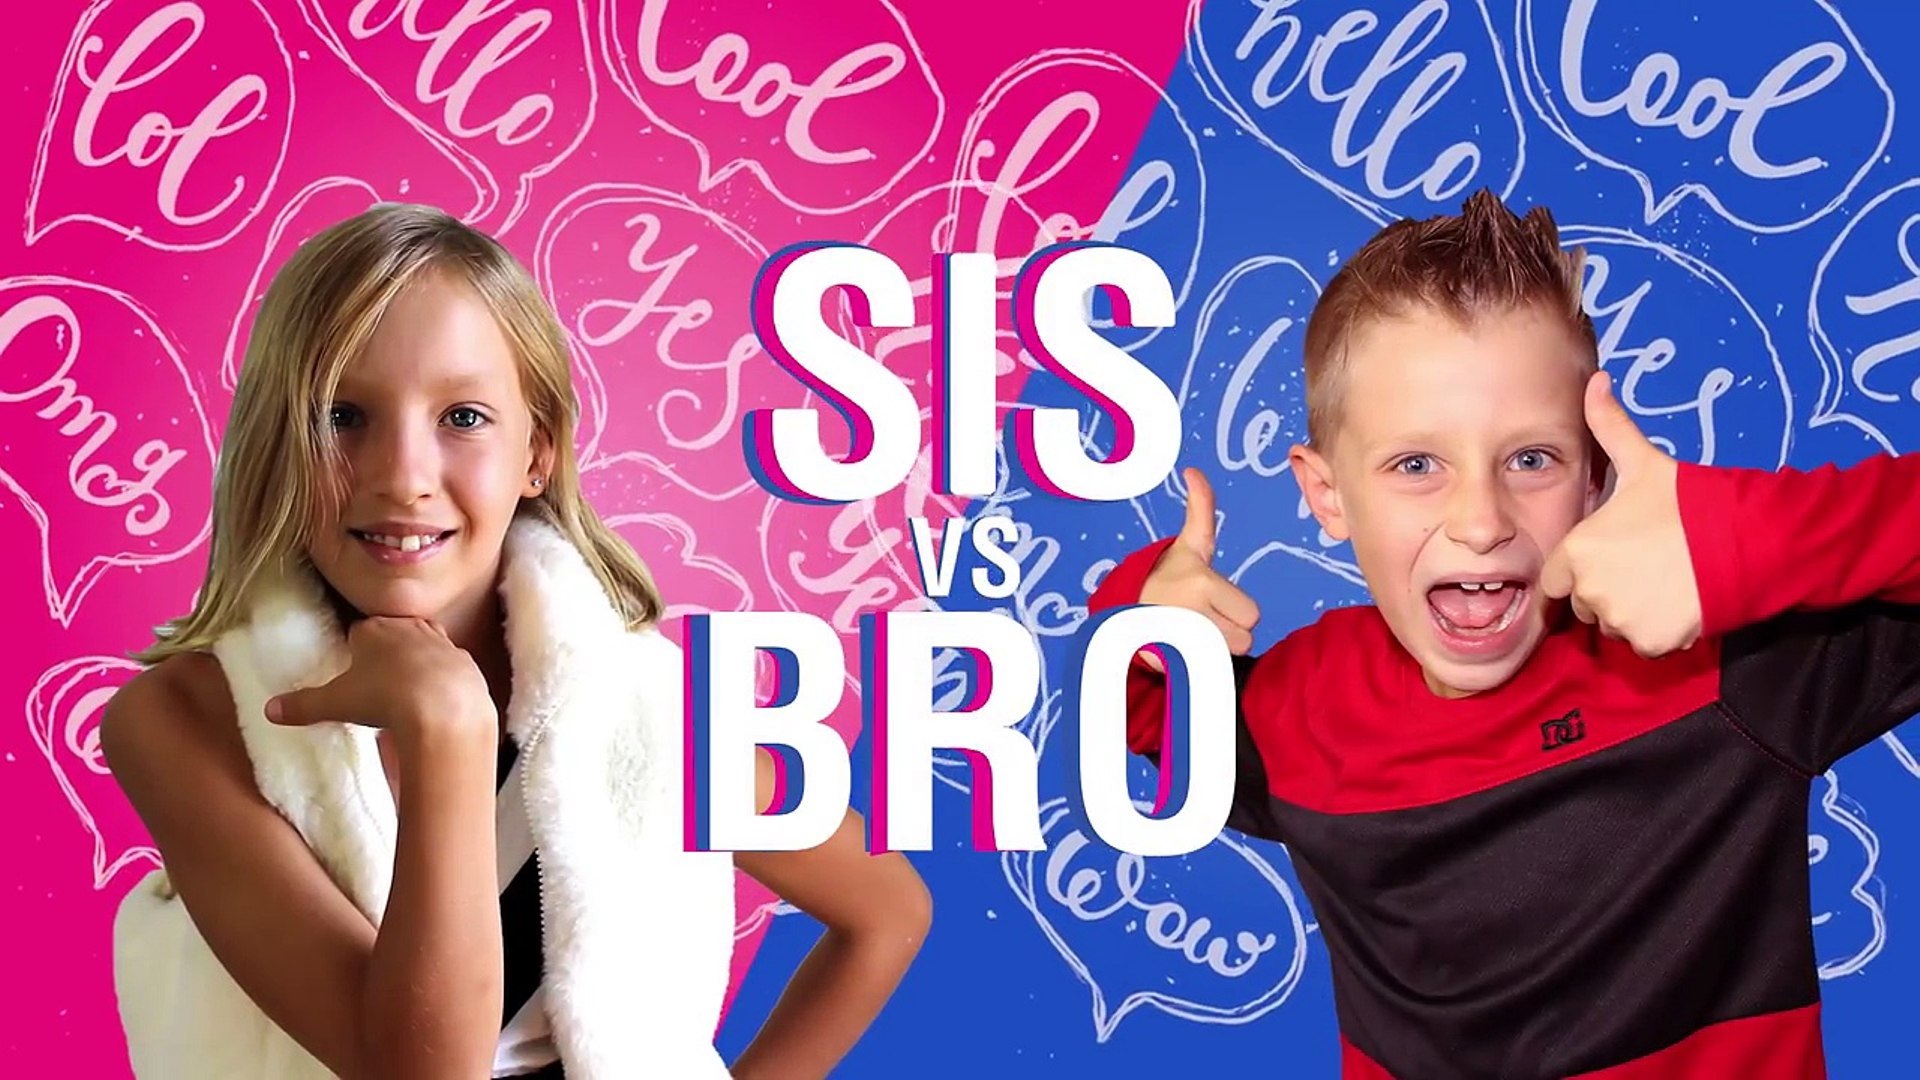 Trivia Quiz How Well Do You Know Sis Sis Vs Bro Trivia Quizzes On Beano Com - cis versus bro videos roblox